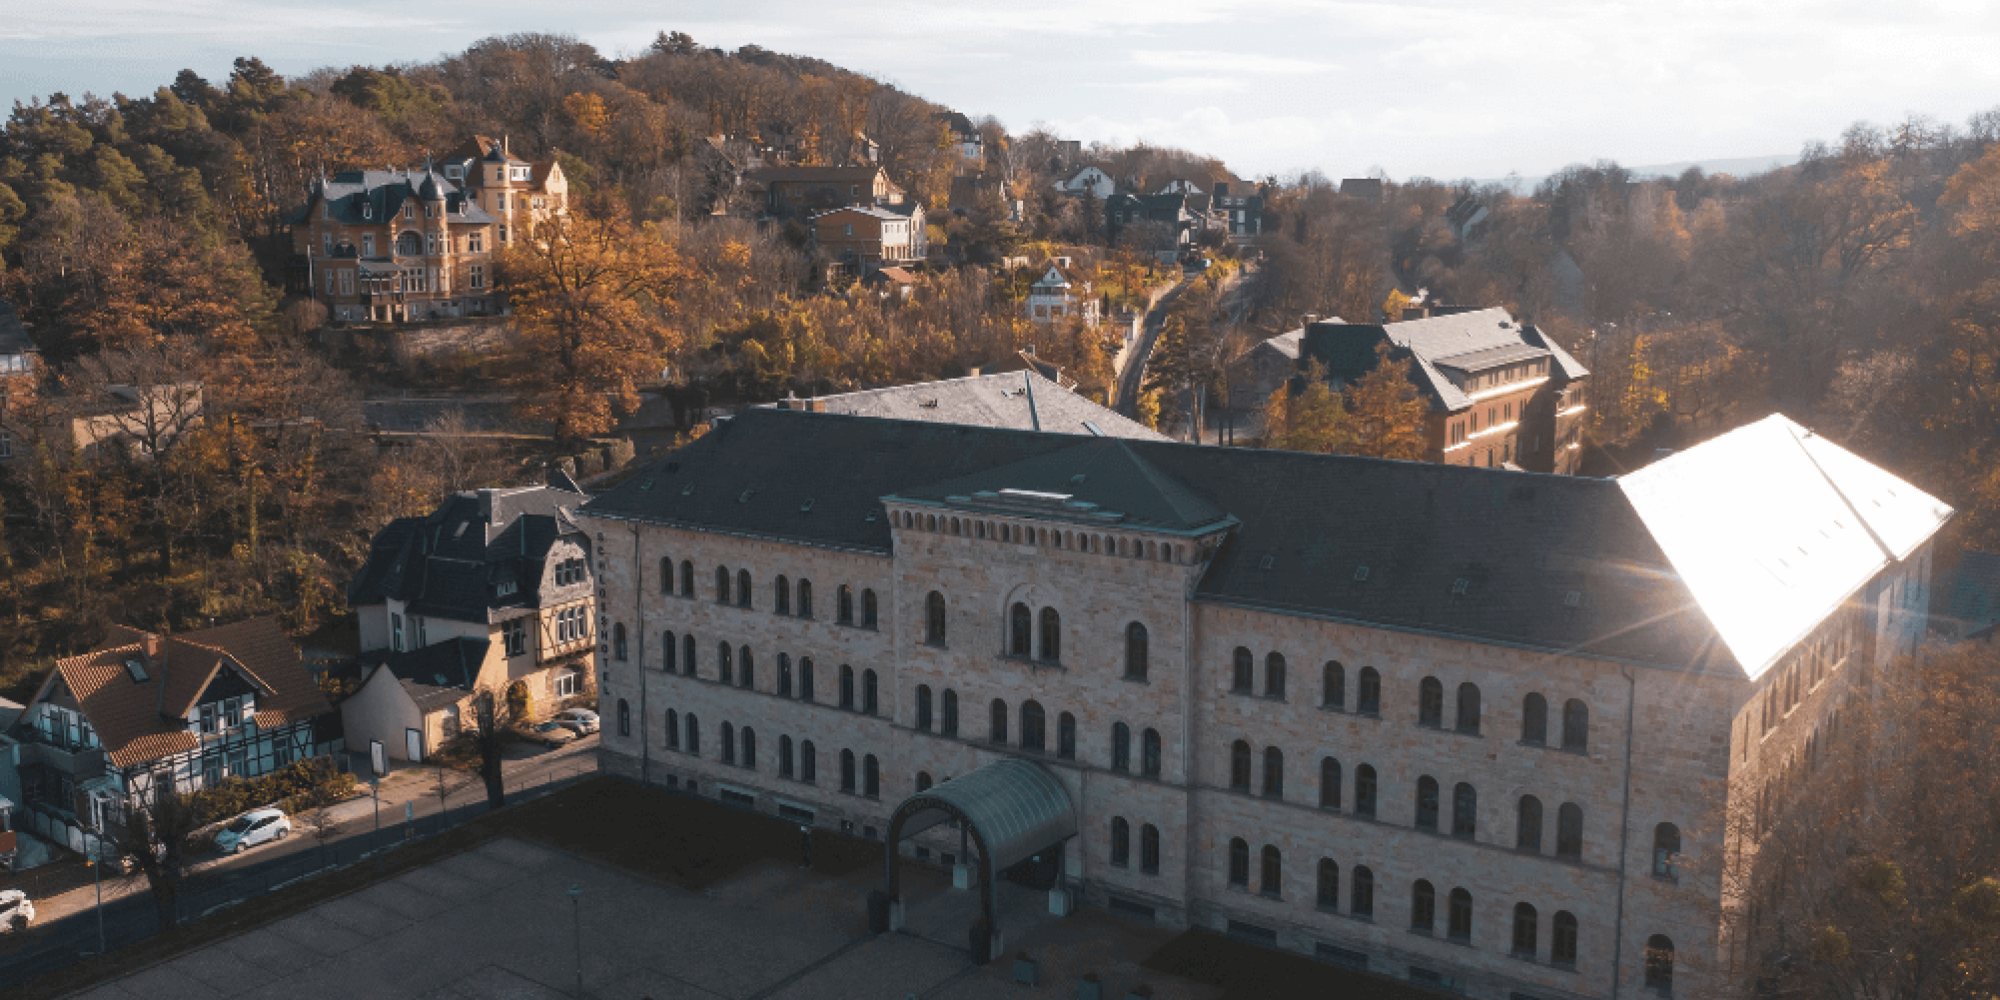 Schlosshotel Blankenburg